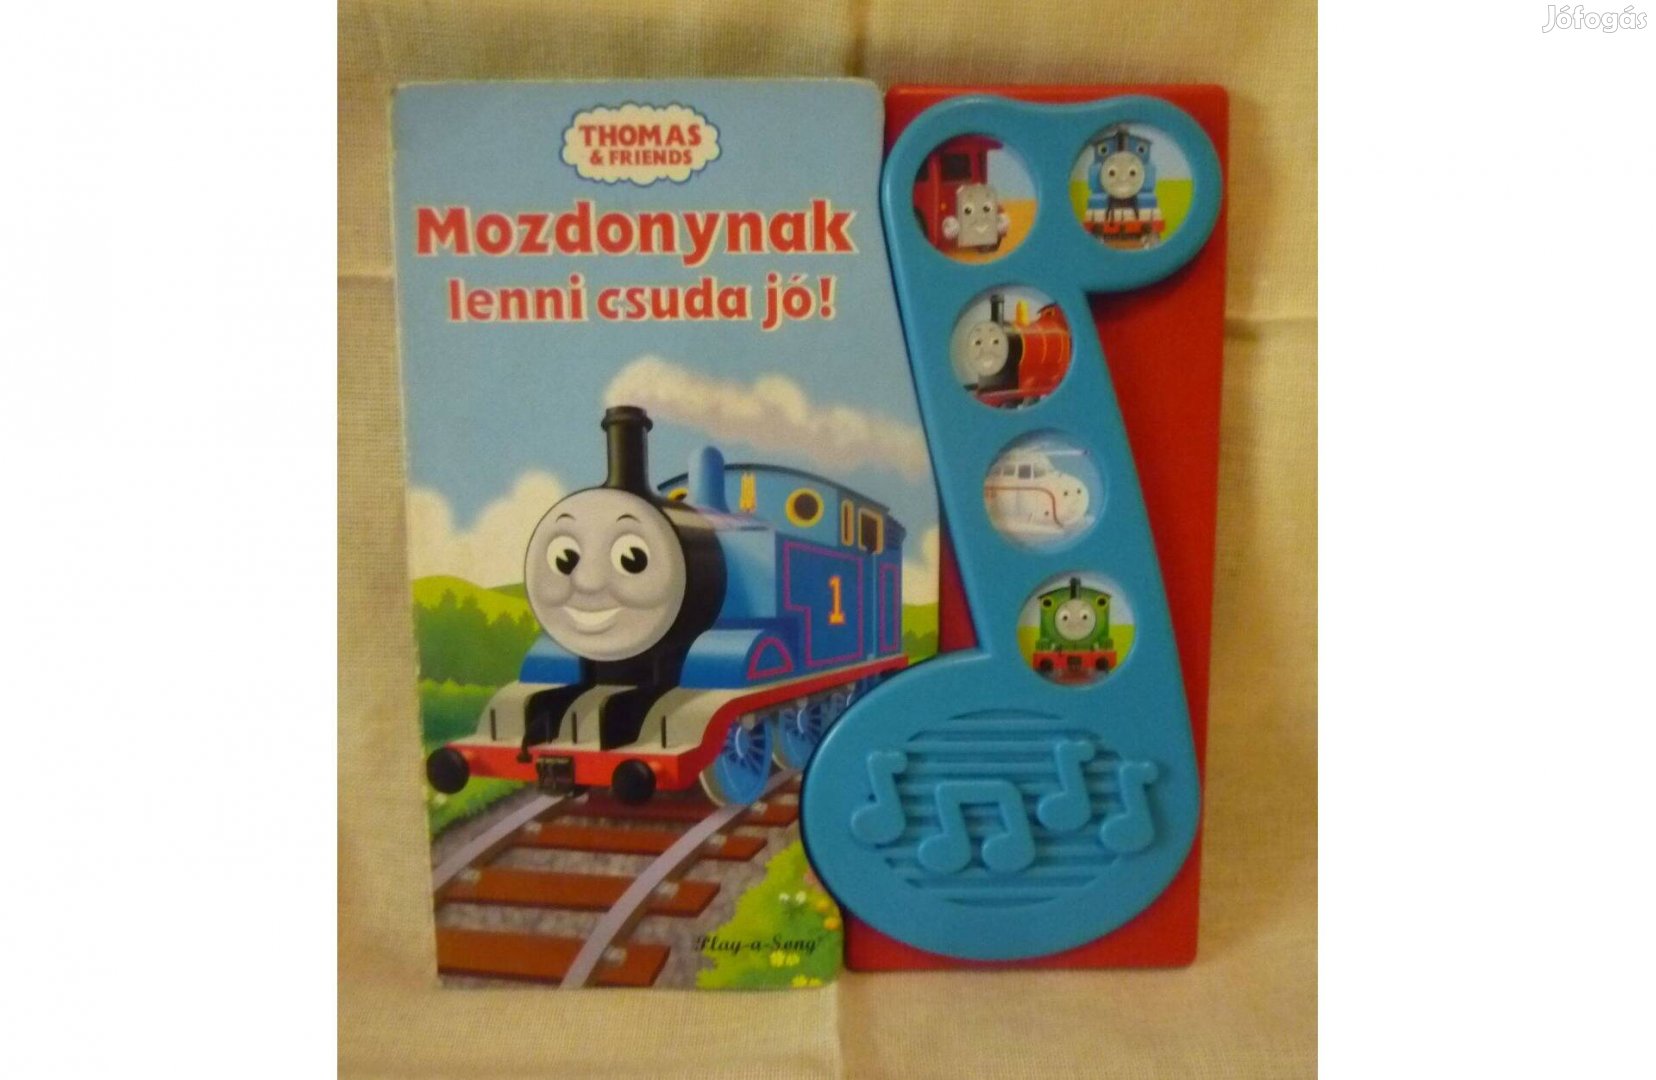 Thomas&Friends Mozdonynak lenni csuda jó! 5 dallammal 2008